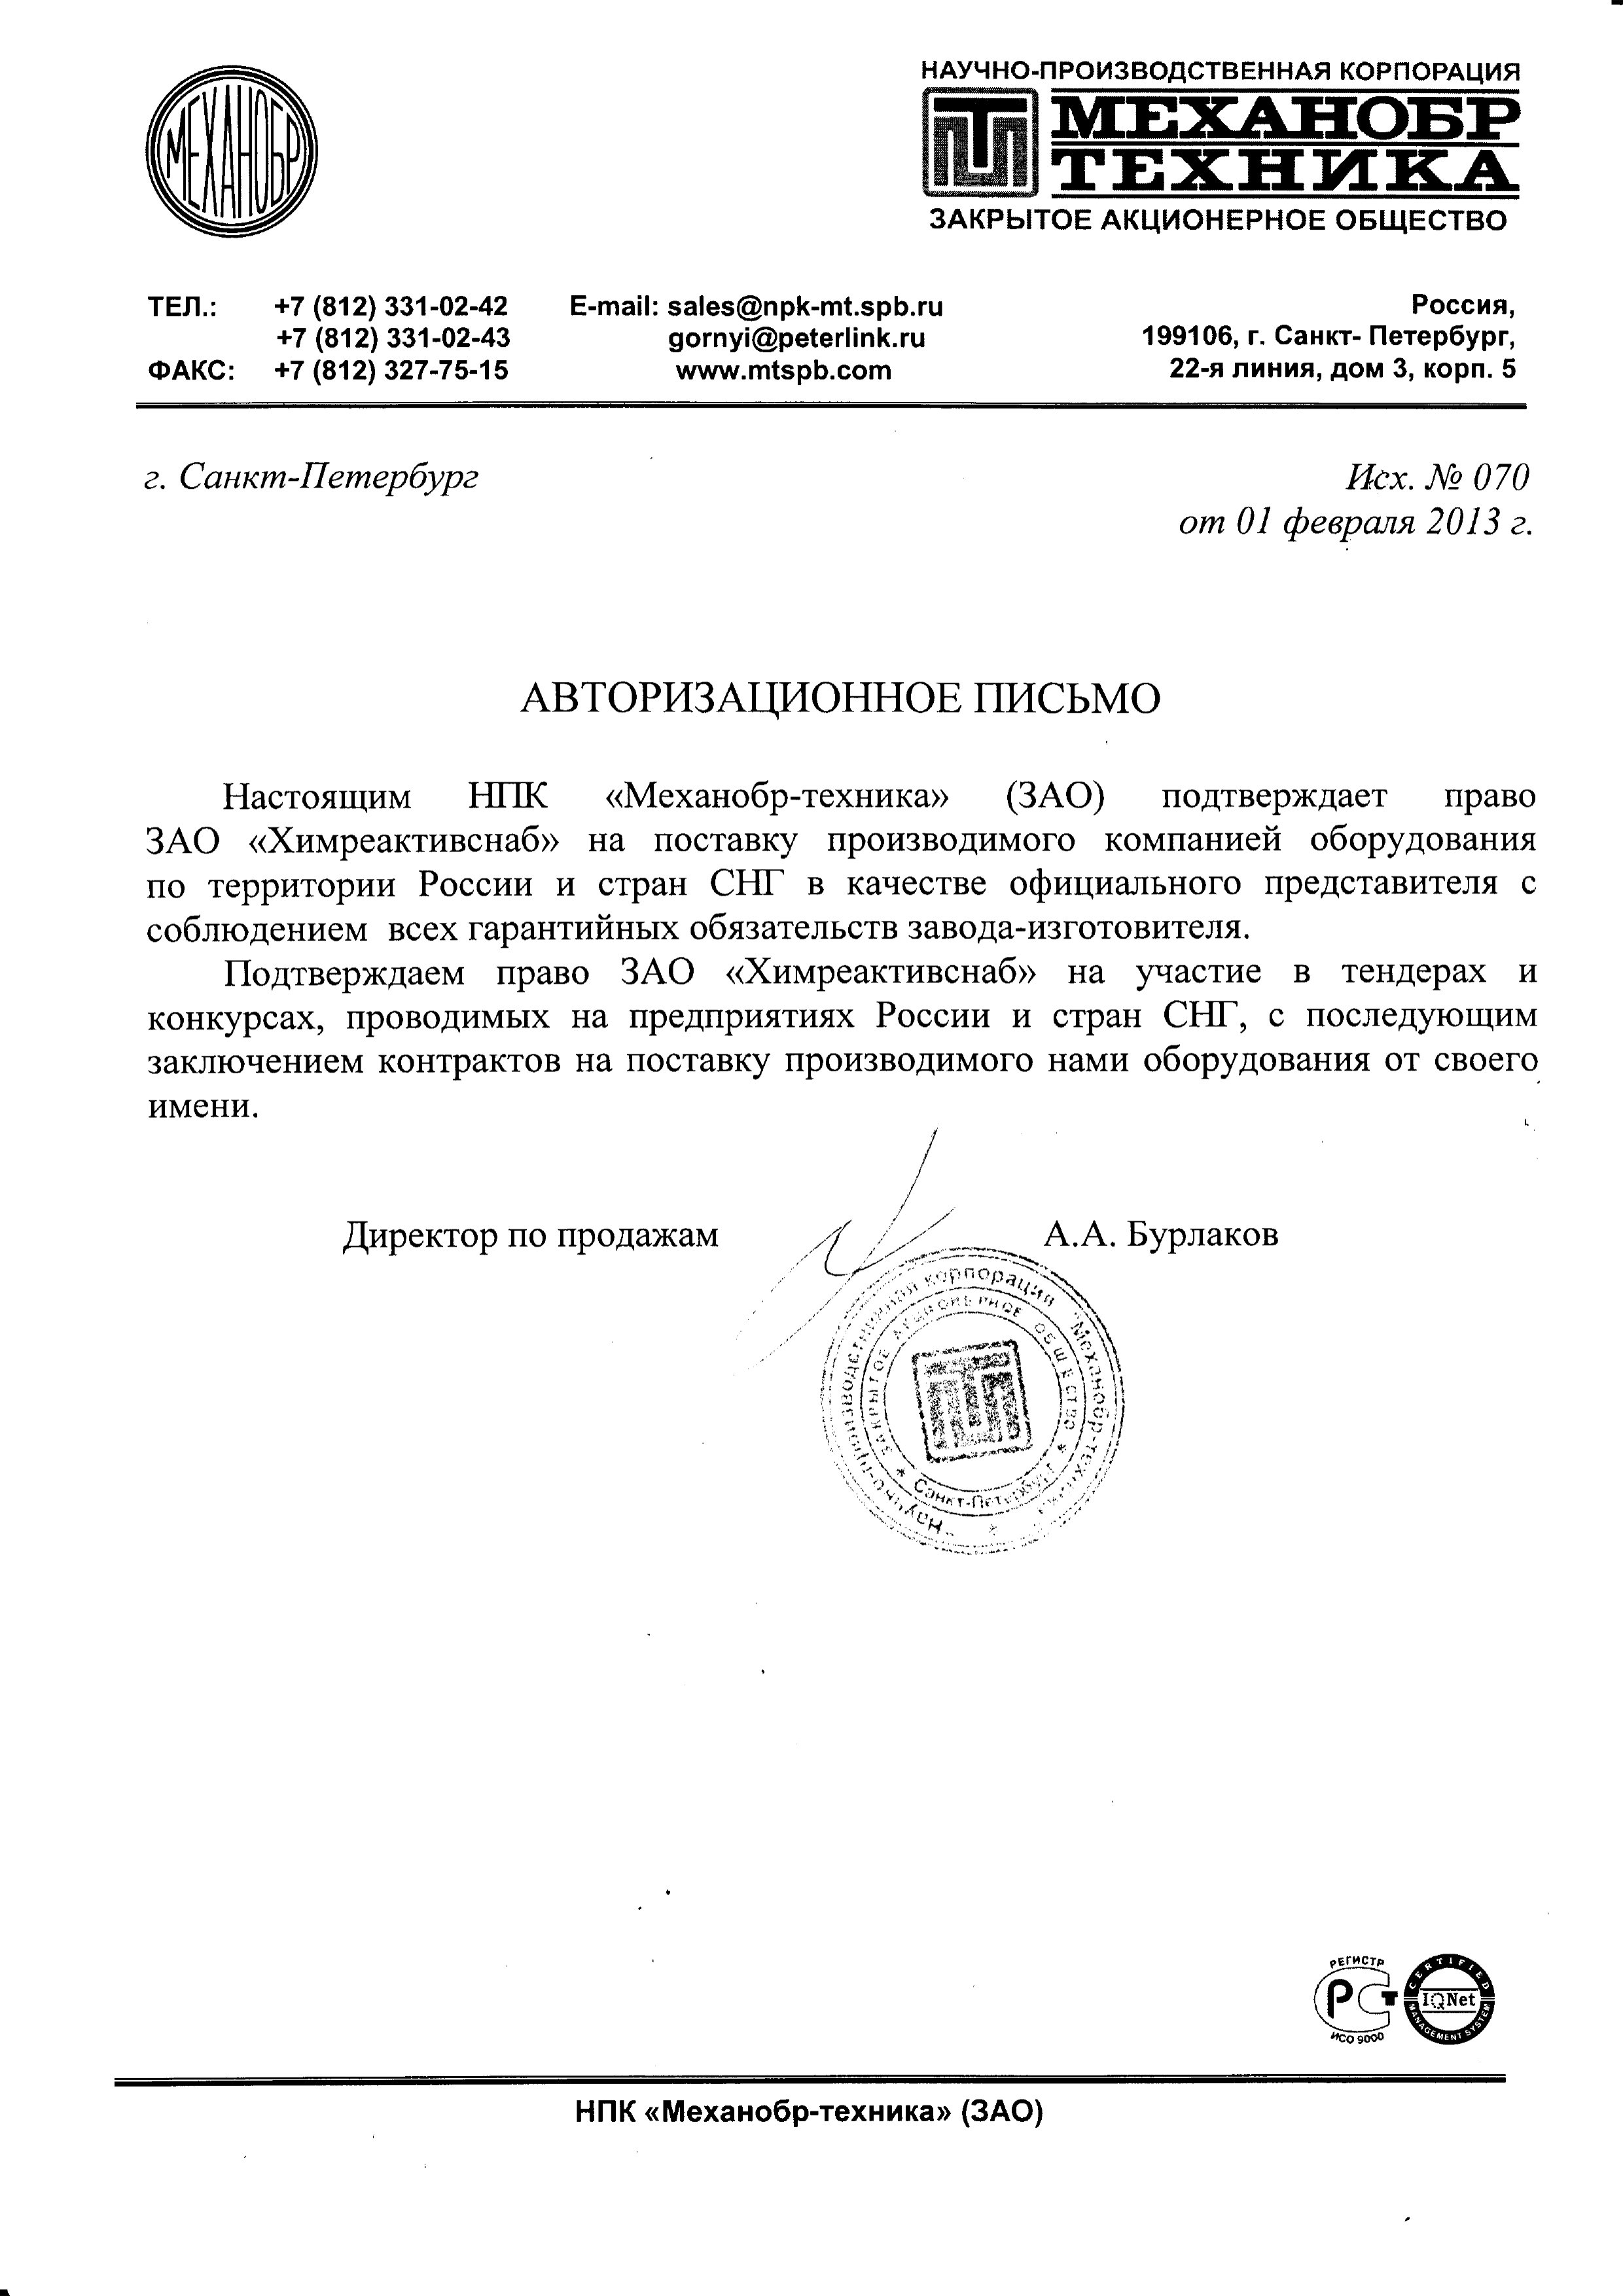 "Механобр-техника" НПК ЗАО, авторизационное письмо